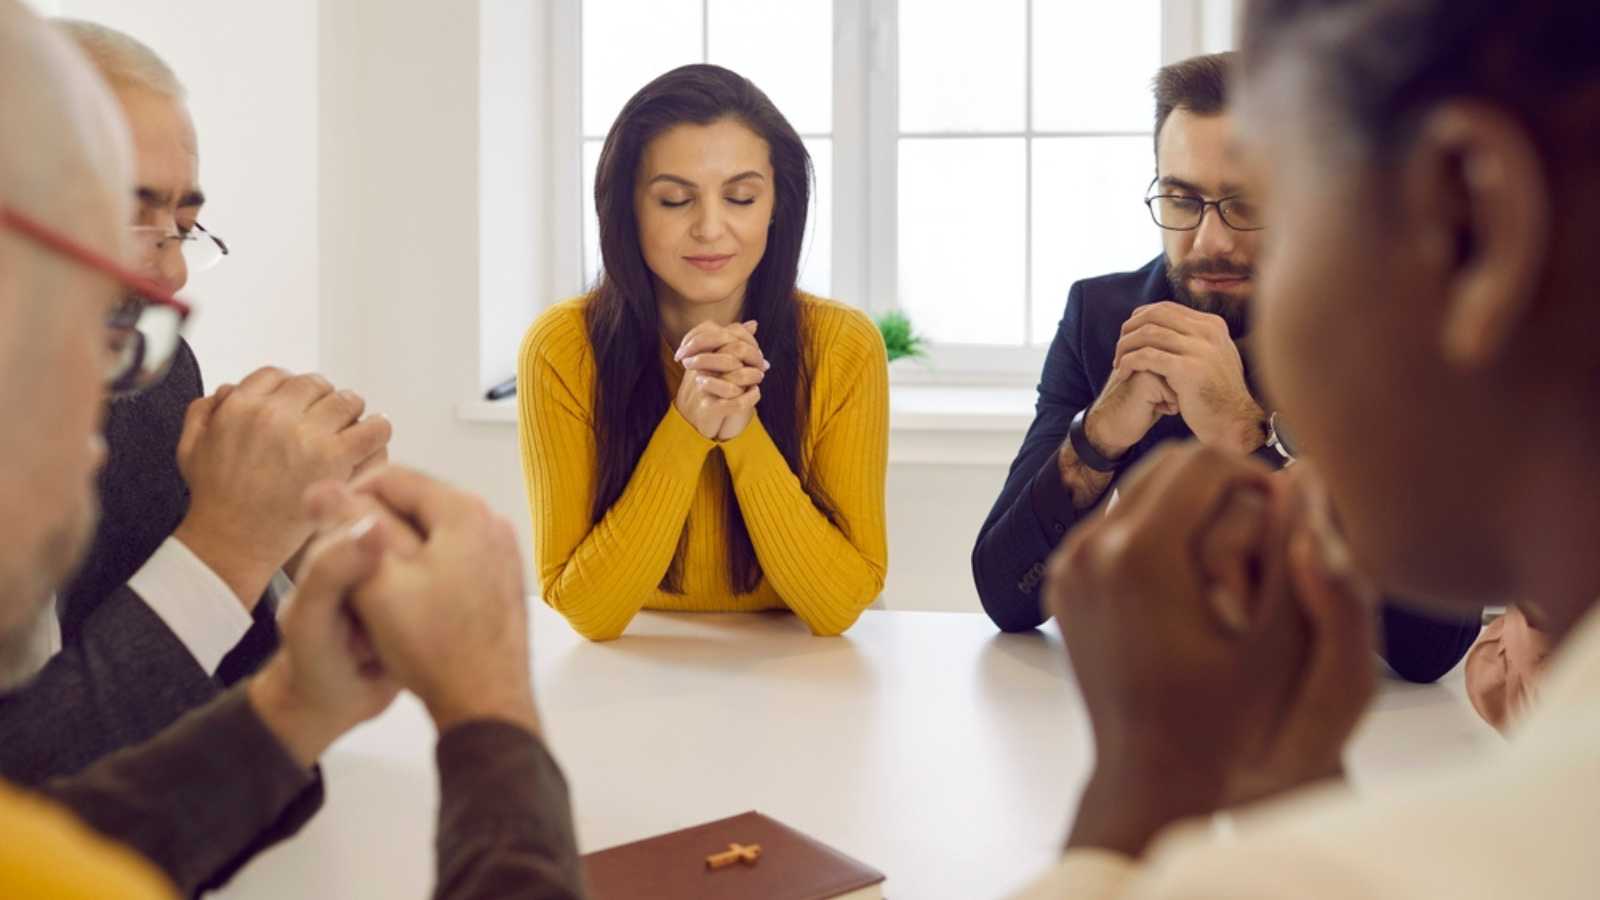 Praying in group